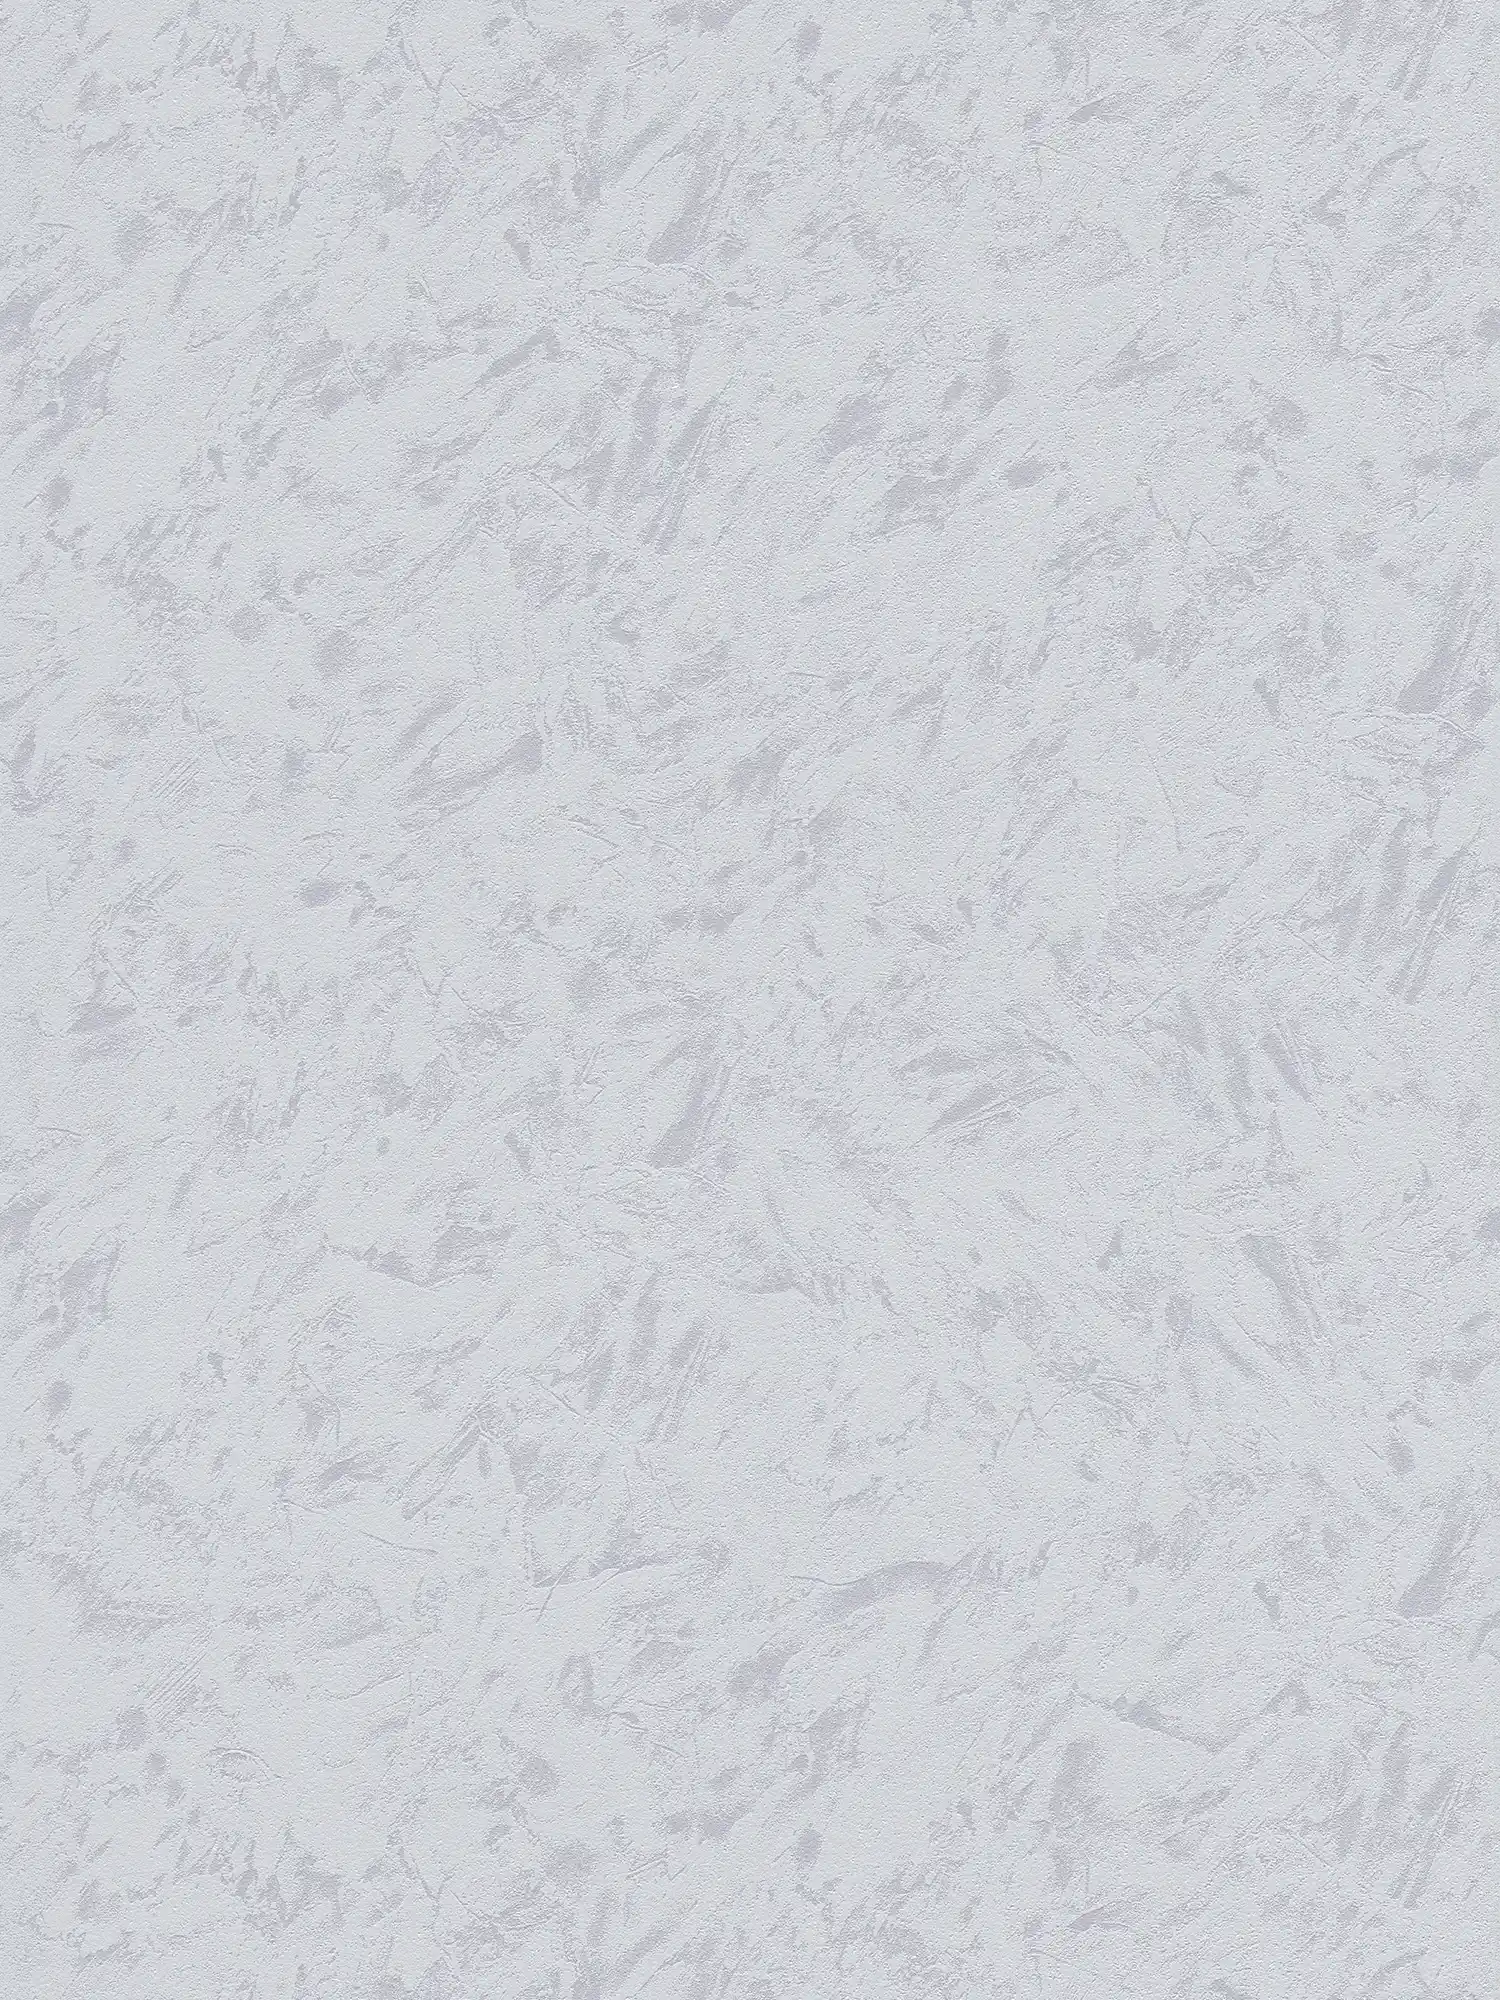             Einfarbige Mustertapete Wischputz-Optik – Grau, Violett
        